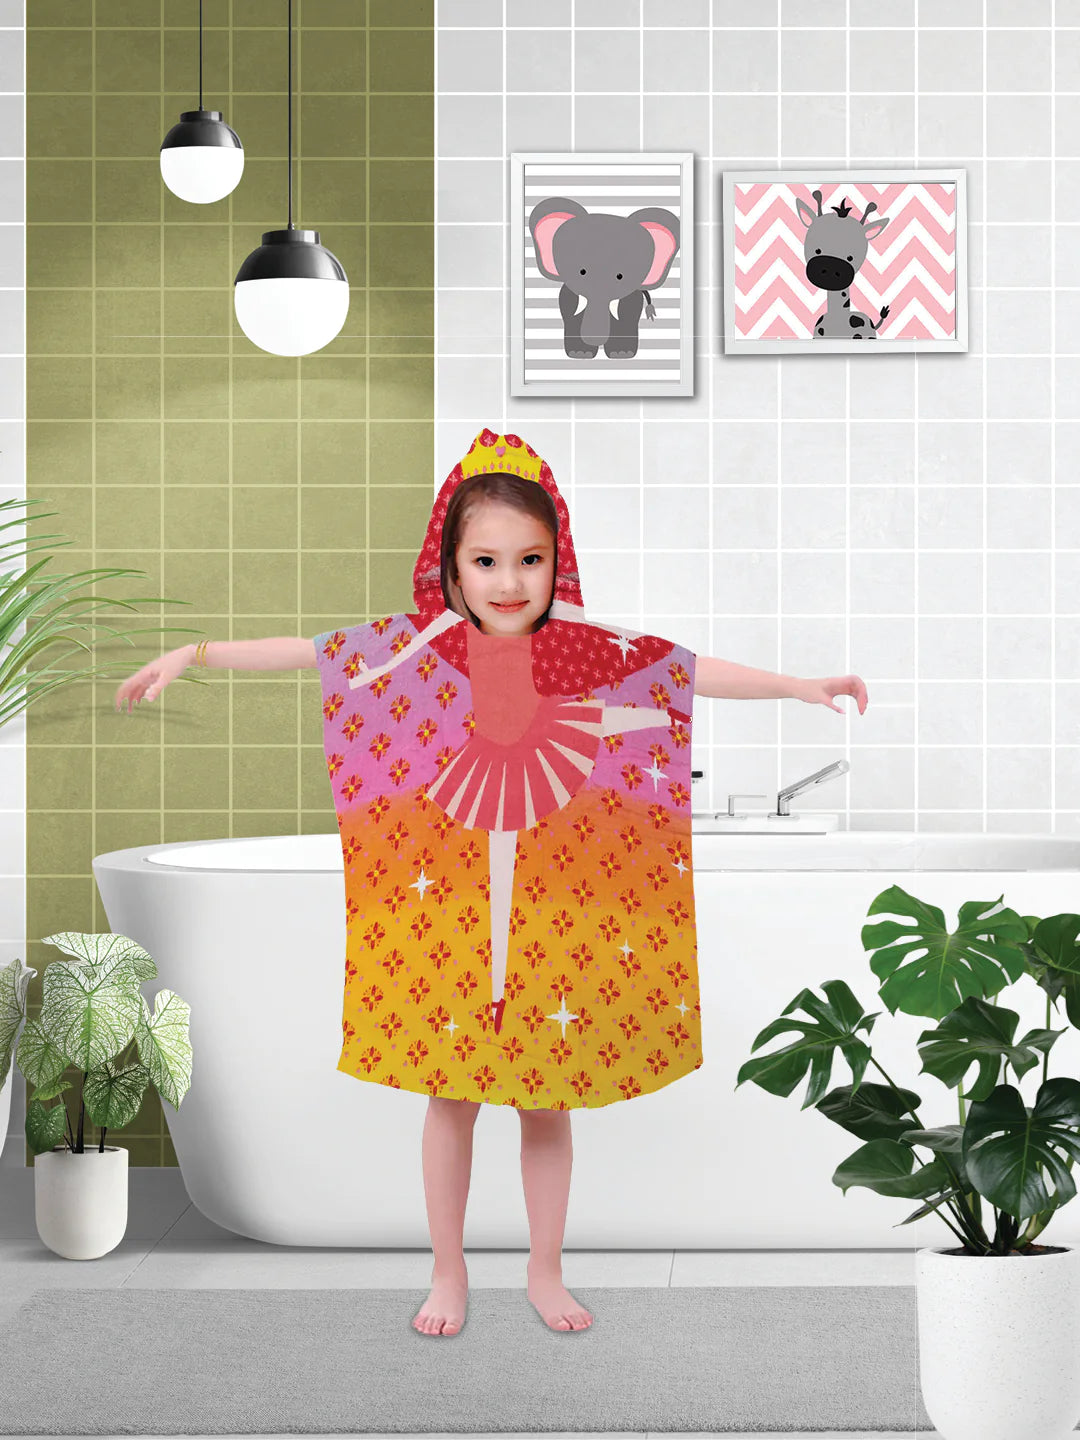 Athom Trendz Dancing Princess Kids Hooded Bath Towel Poncho 60x120 Cm